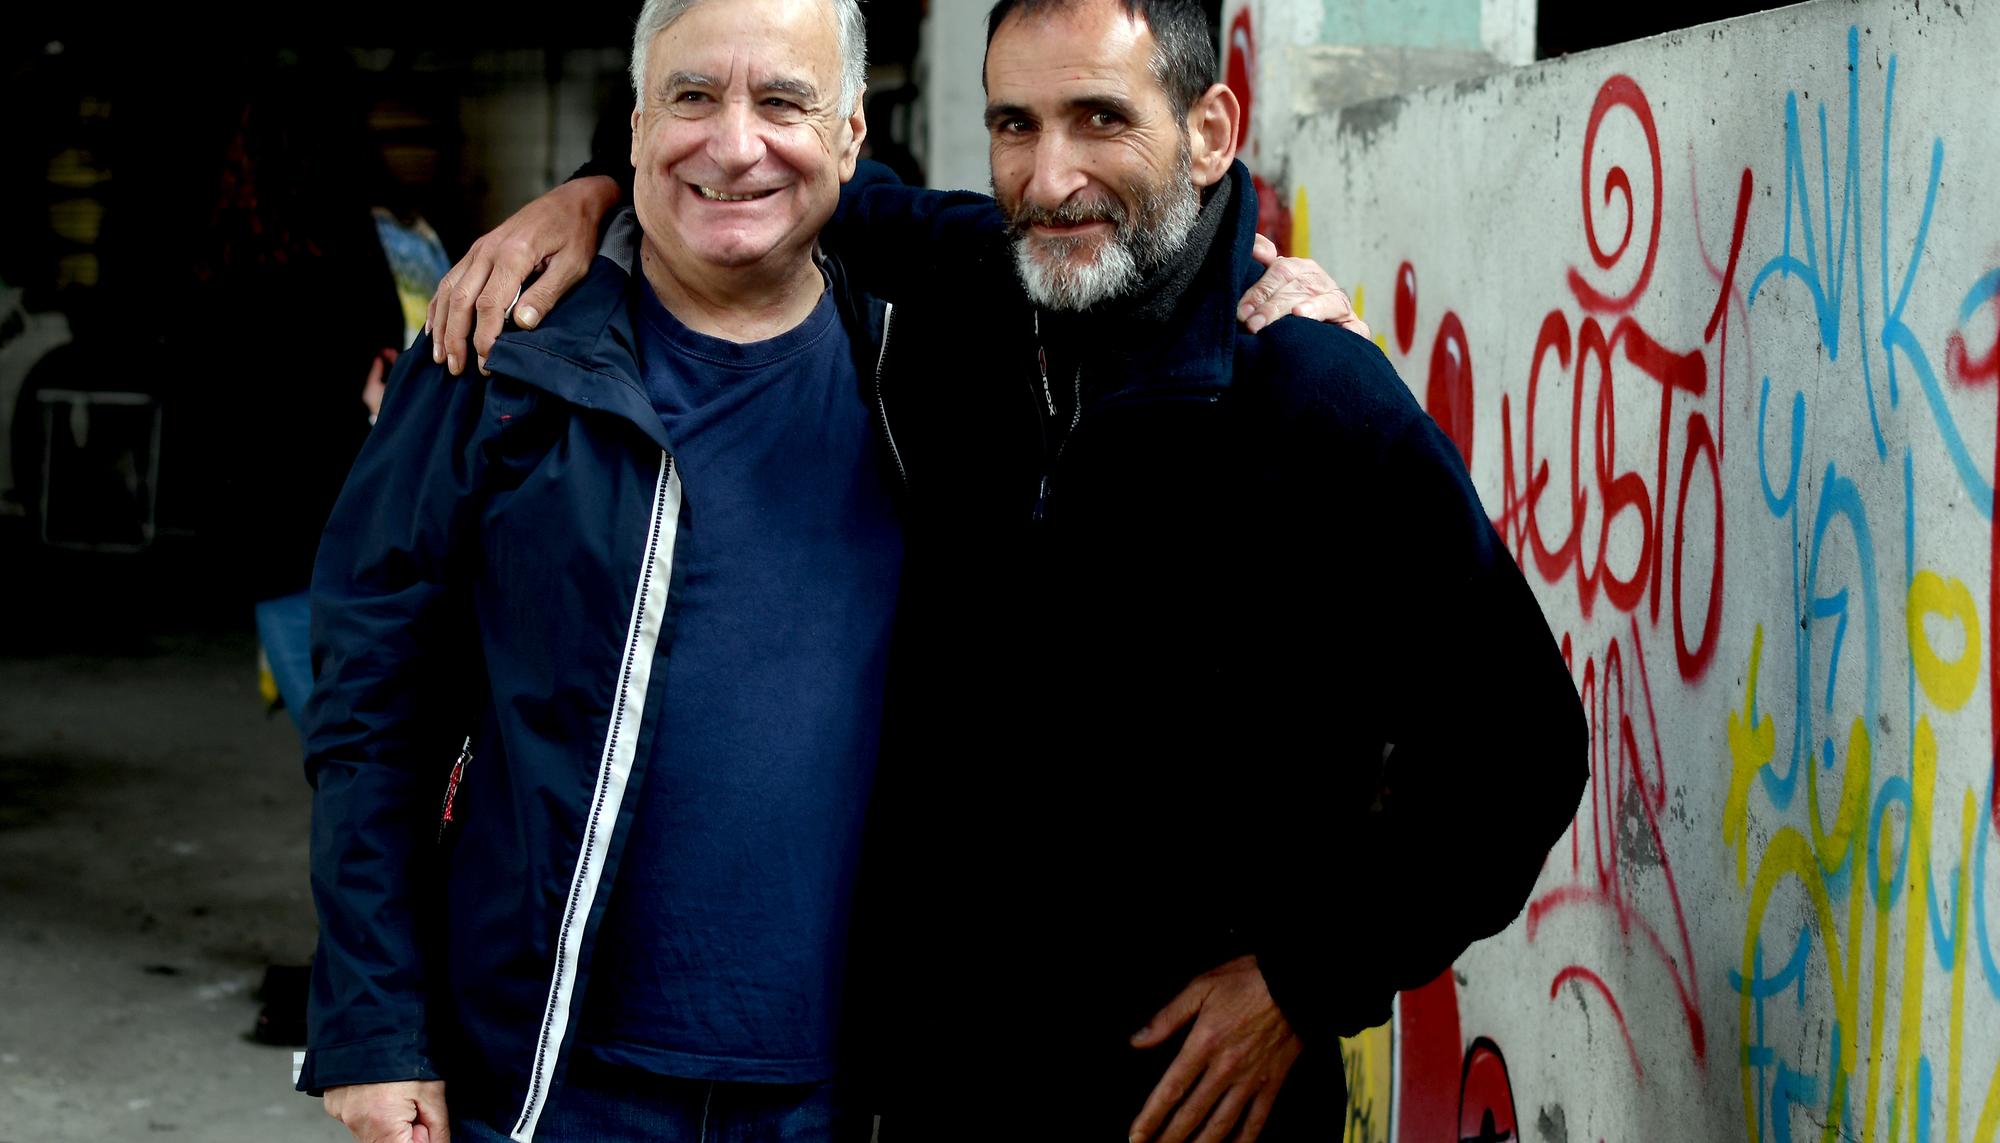 Antón Bouza (esquerda) xunto a Javier Romero, unha persoa sen fogar